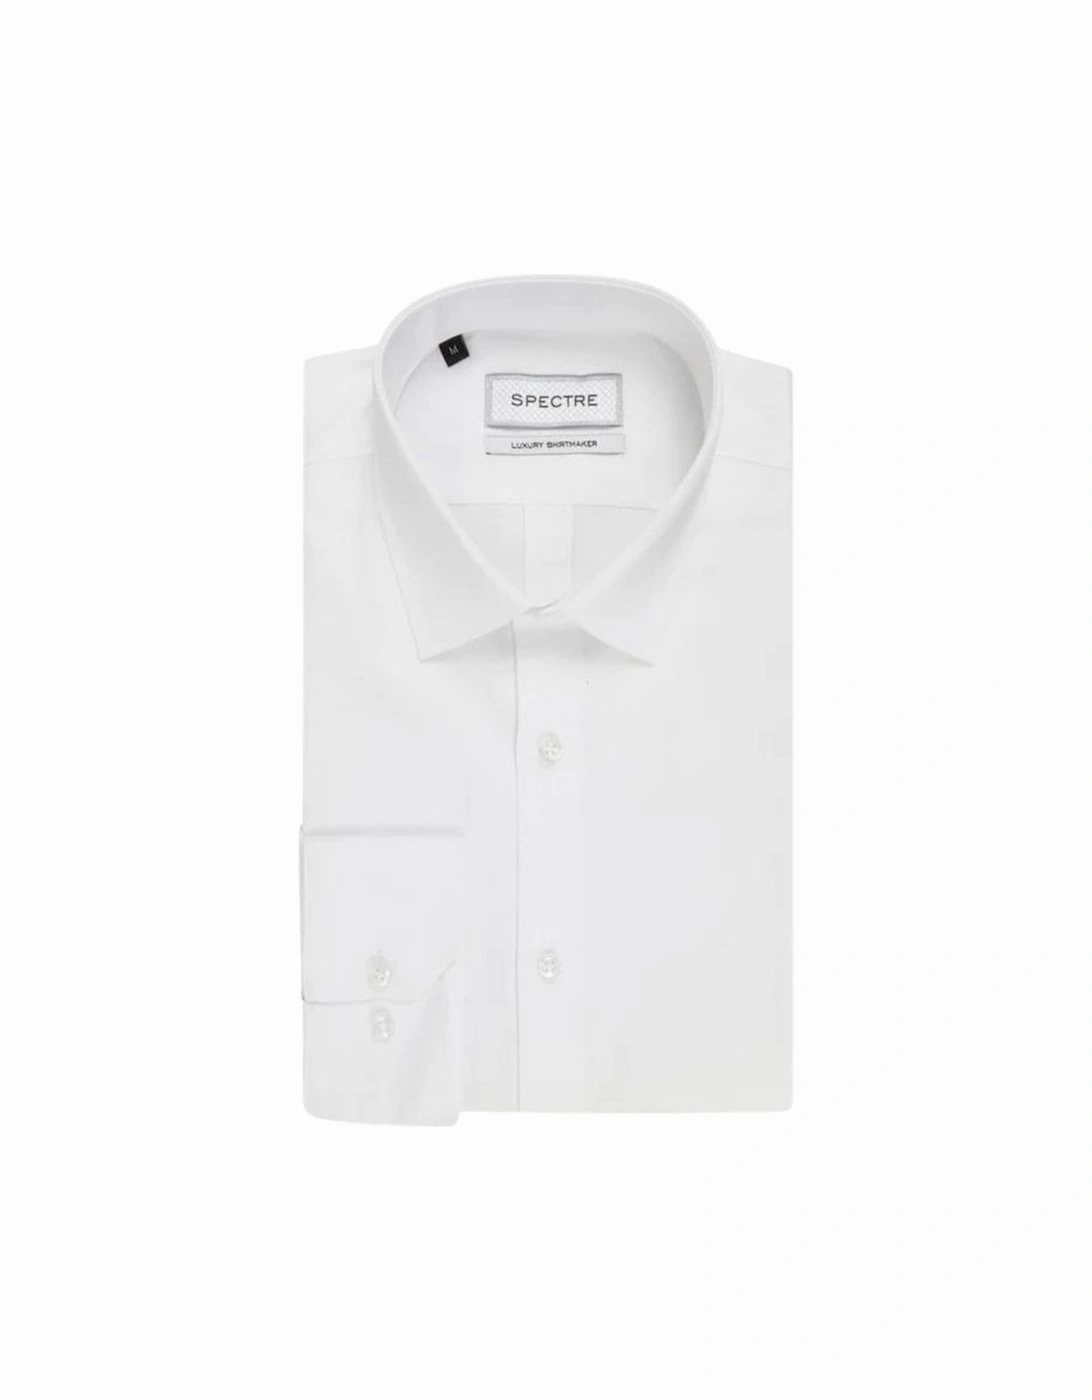 Jacob Luxury Suit Shirt - White, 2 of 1